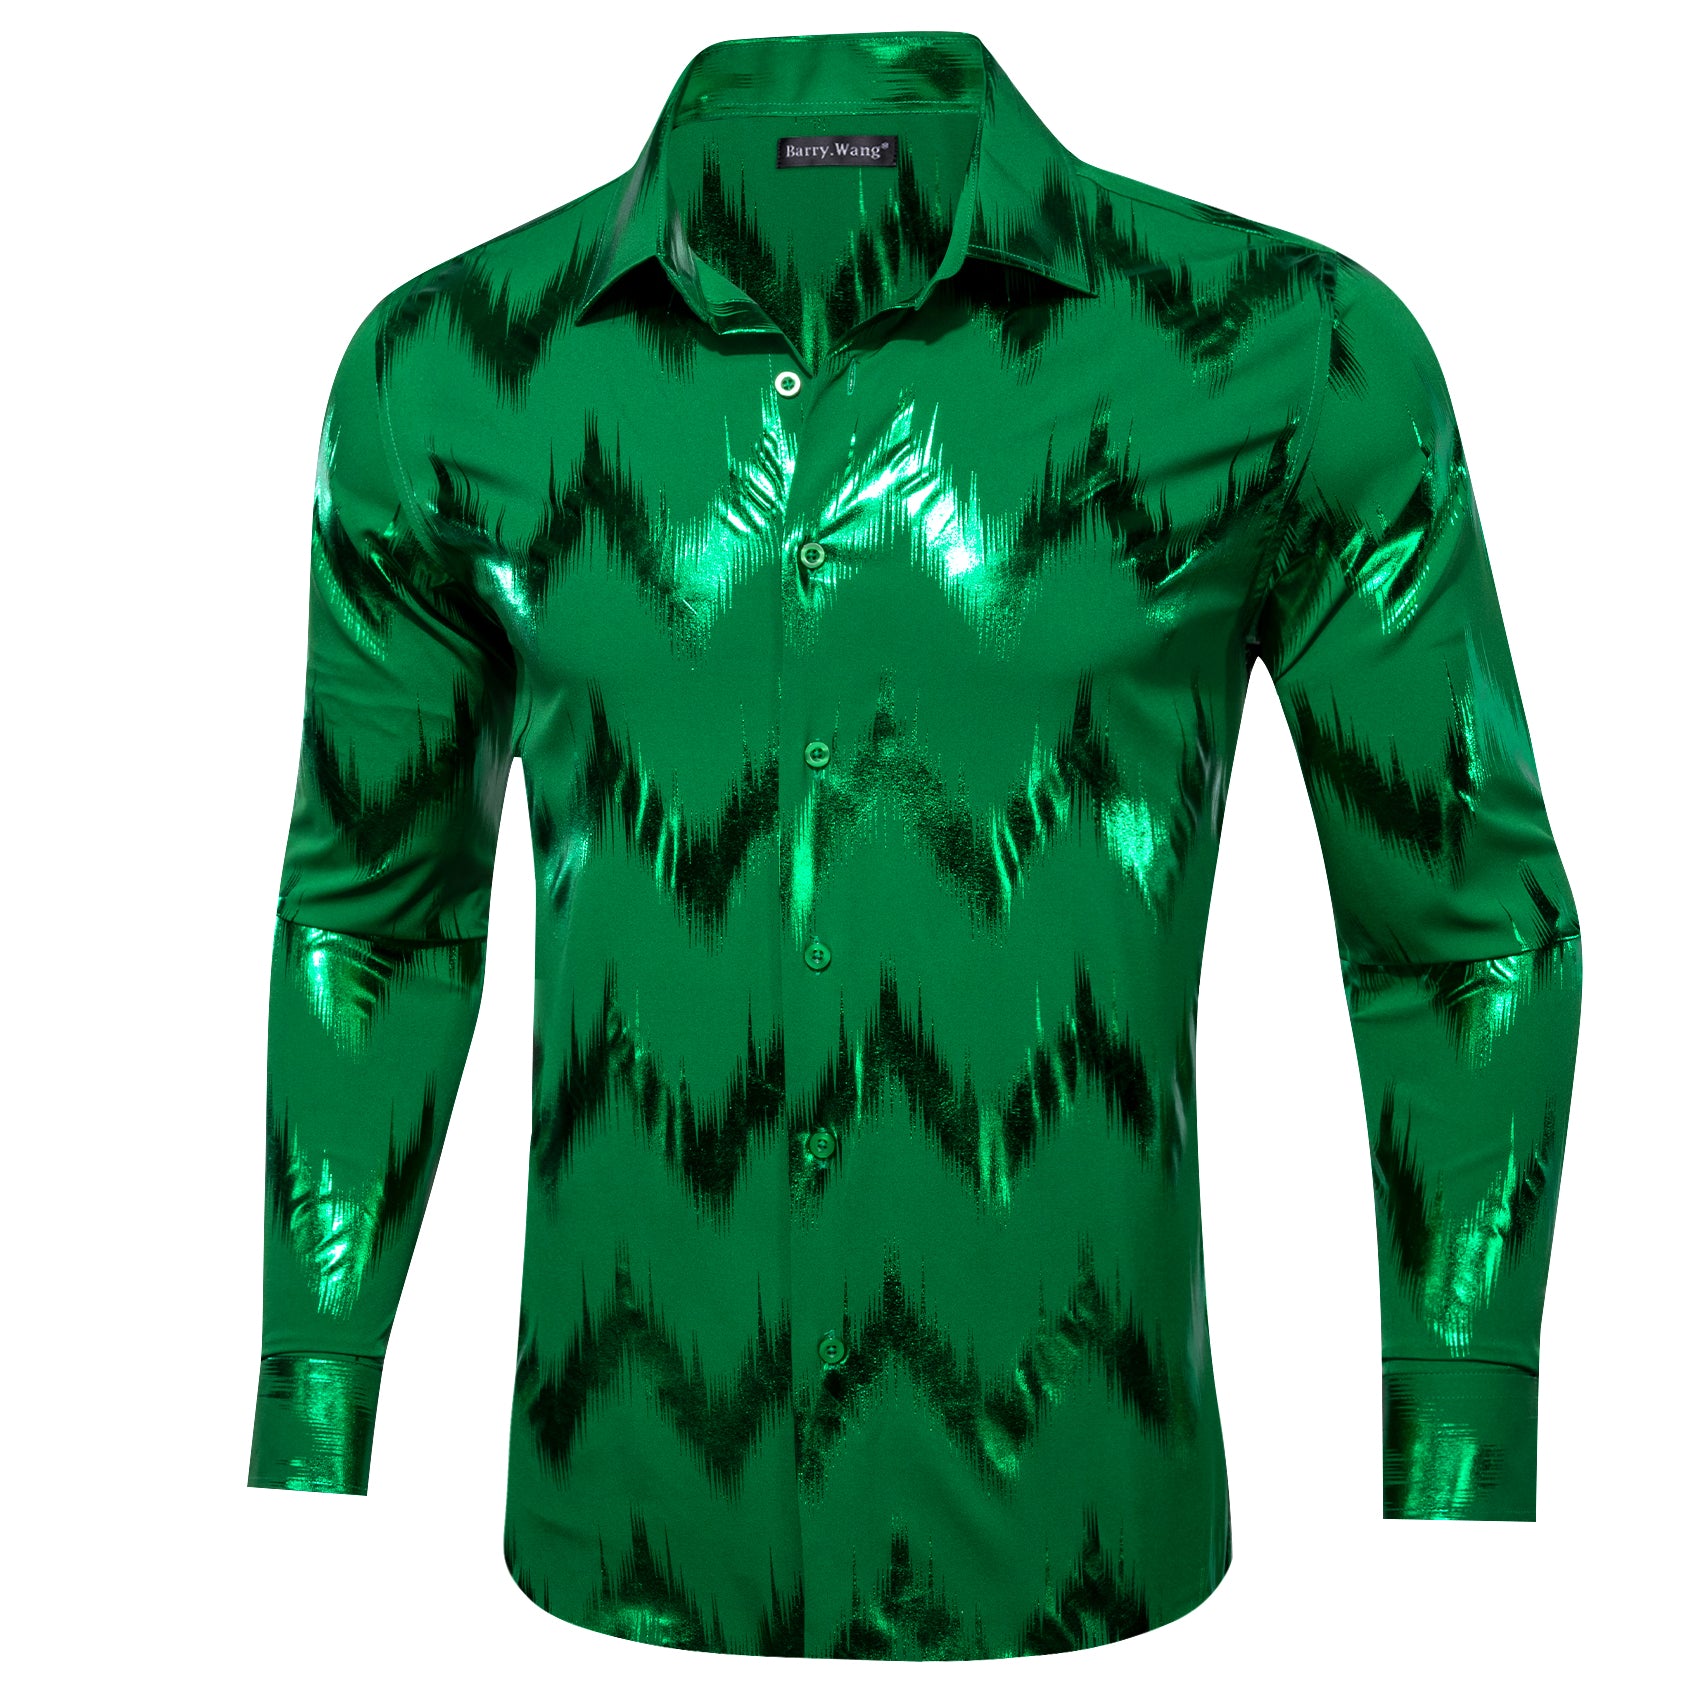 Barry.wang Stylish Shirt Bronzing Printing Green Men's Shirt